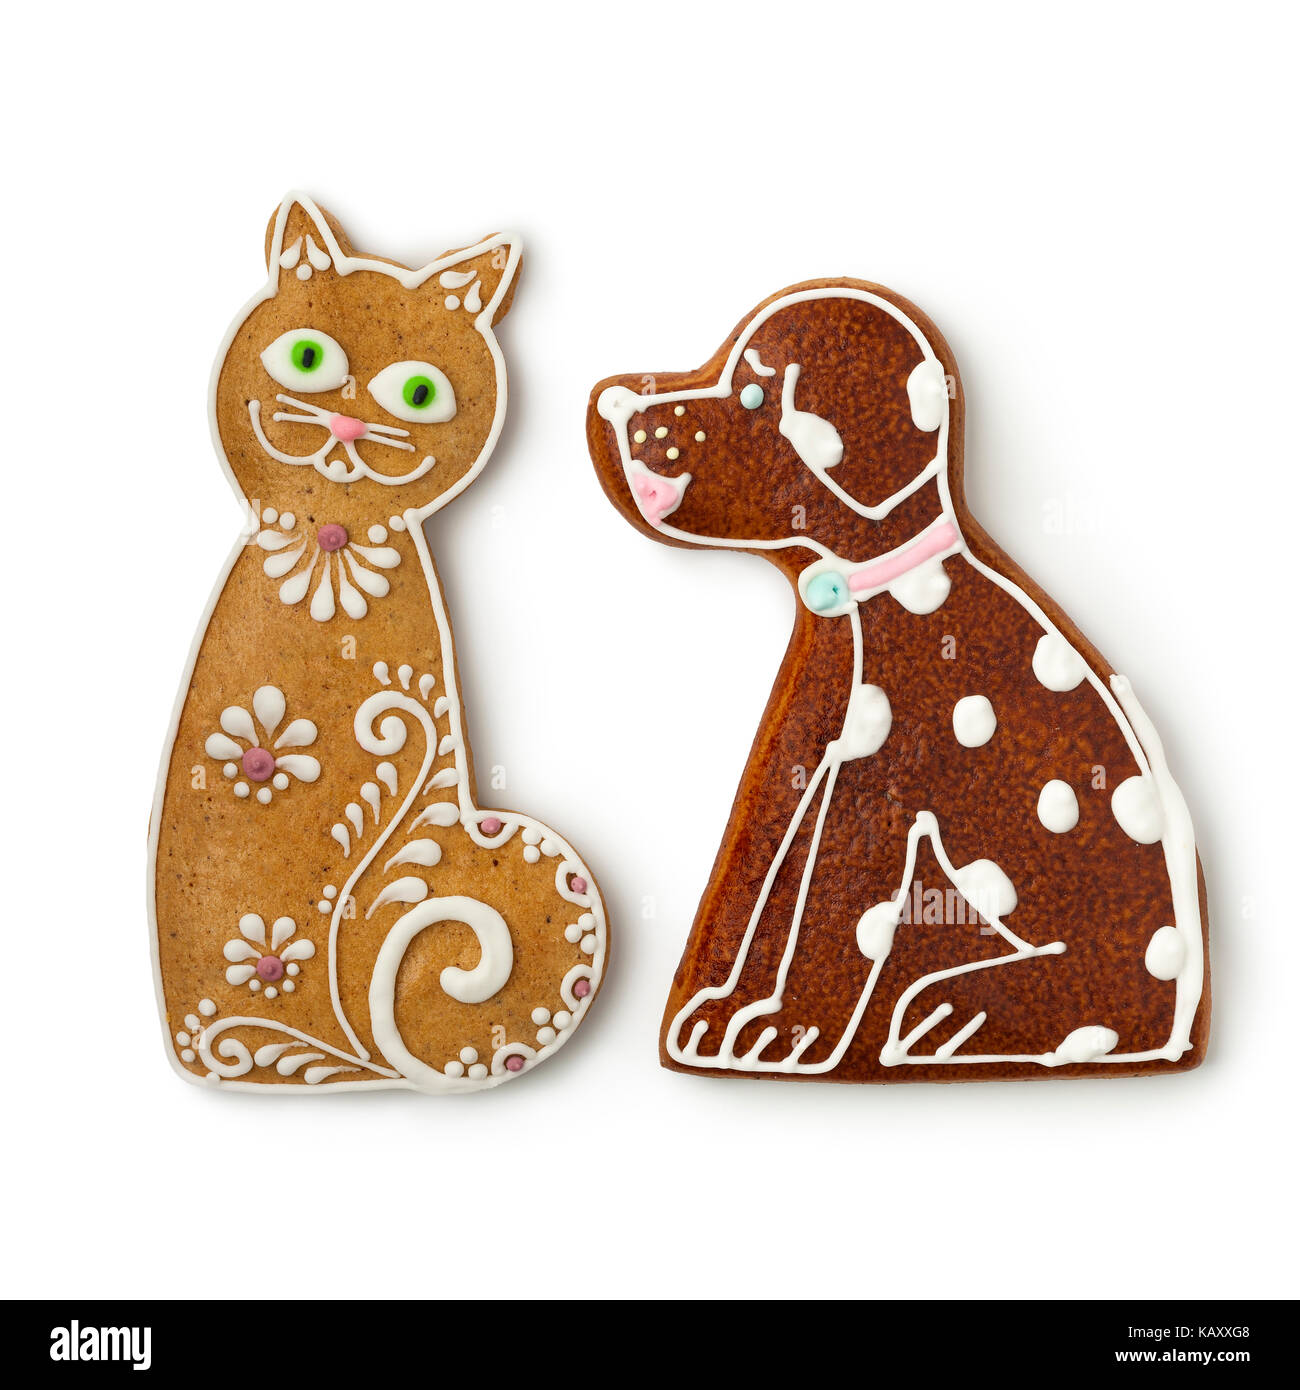 Katze und Hund Ingwer Cookies auf weißem Hintergrund Stockfoto